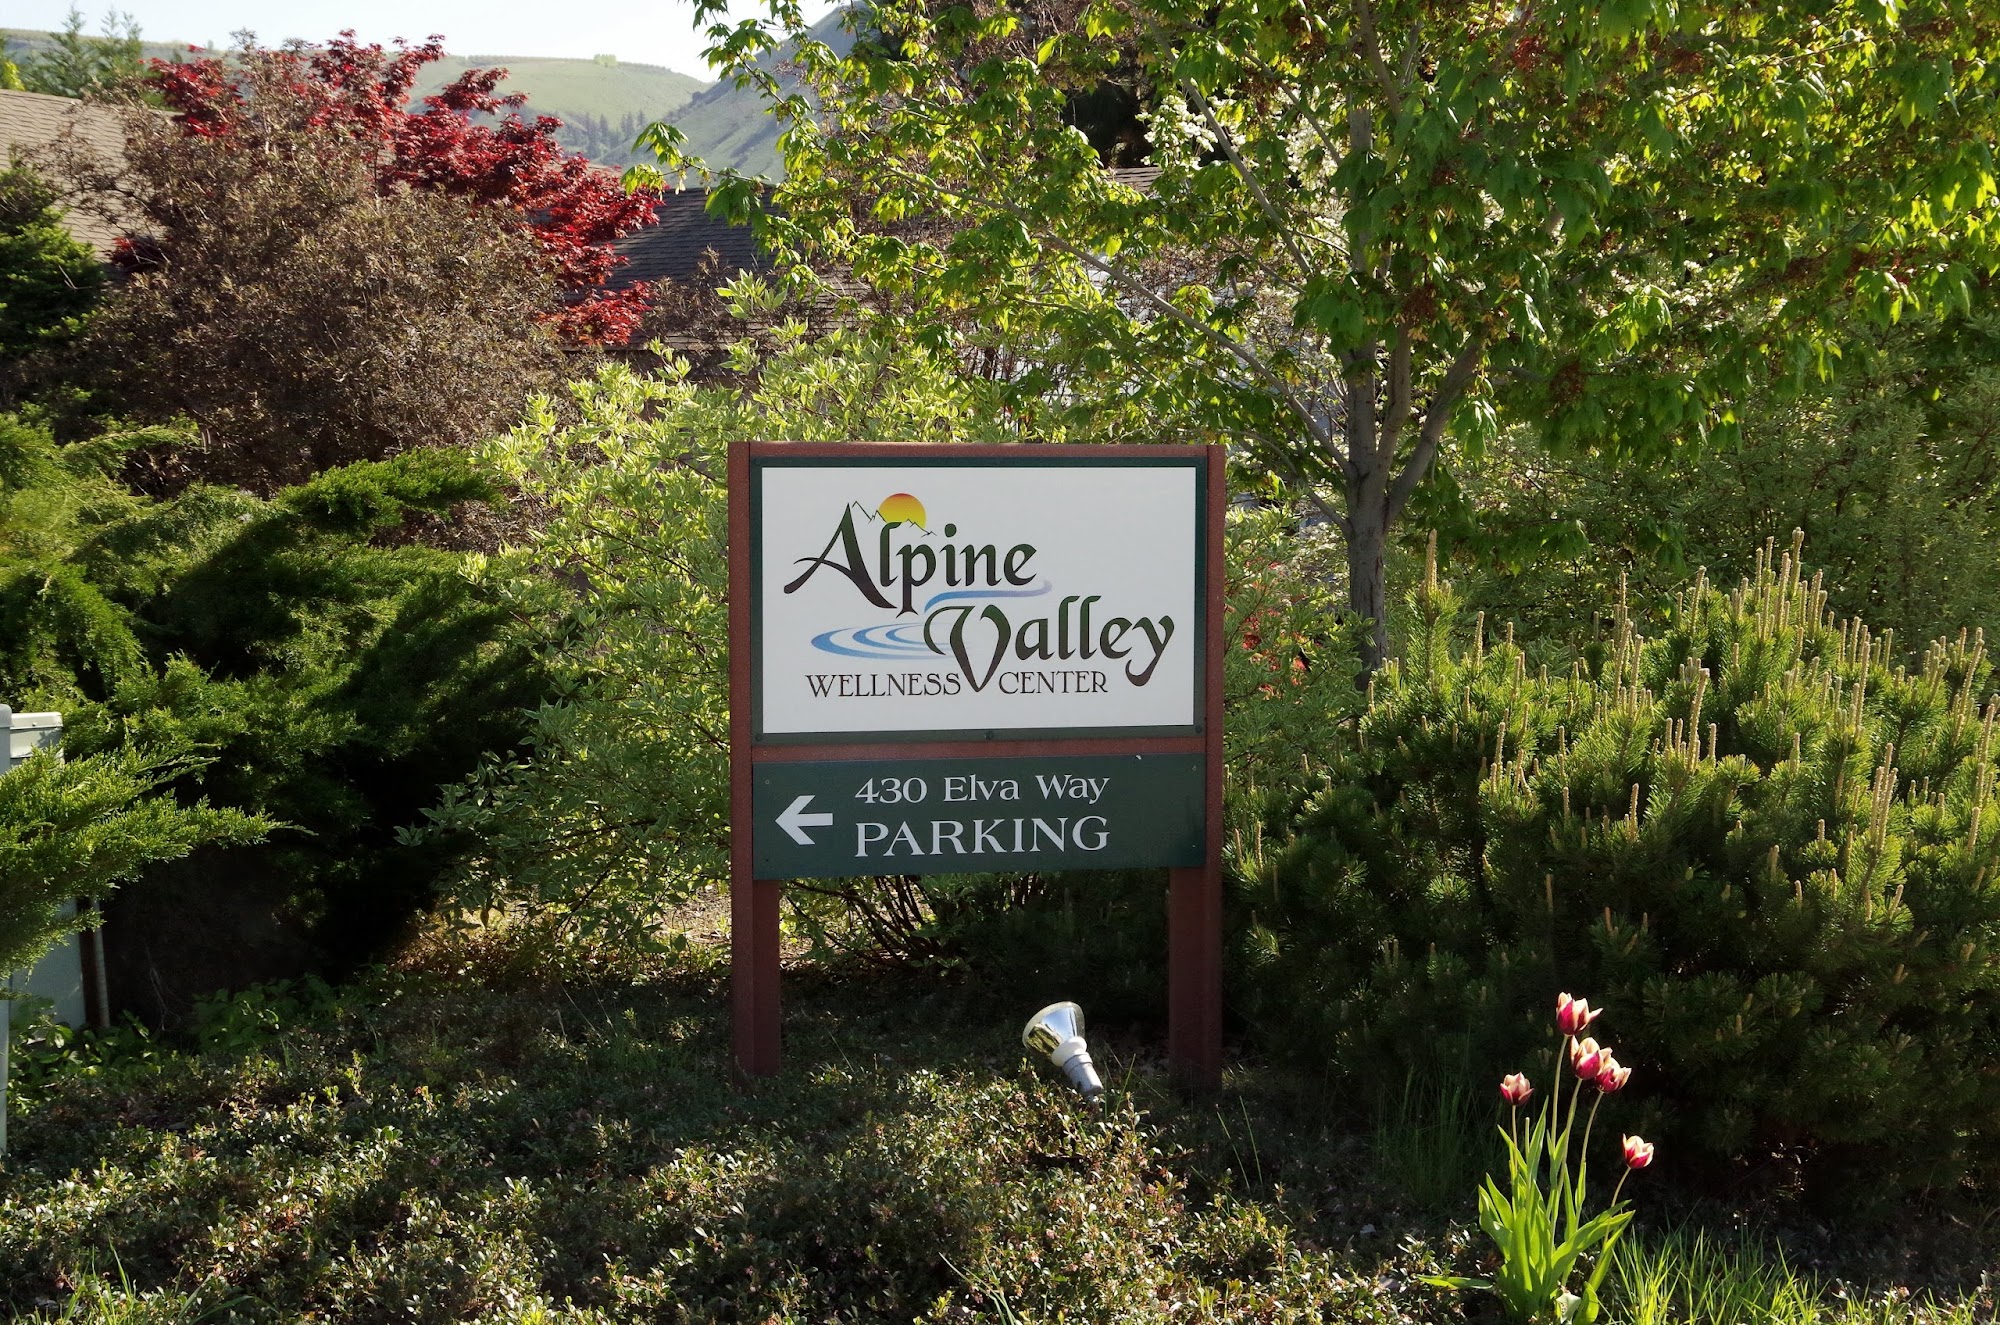 Alpine Valley Wellness Center 430 Elva Way SE #1, East Wenatchee Washington 98802